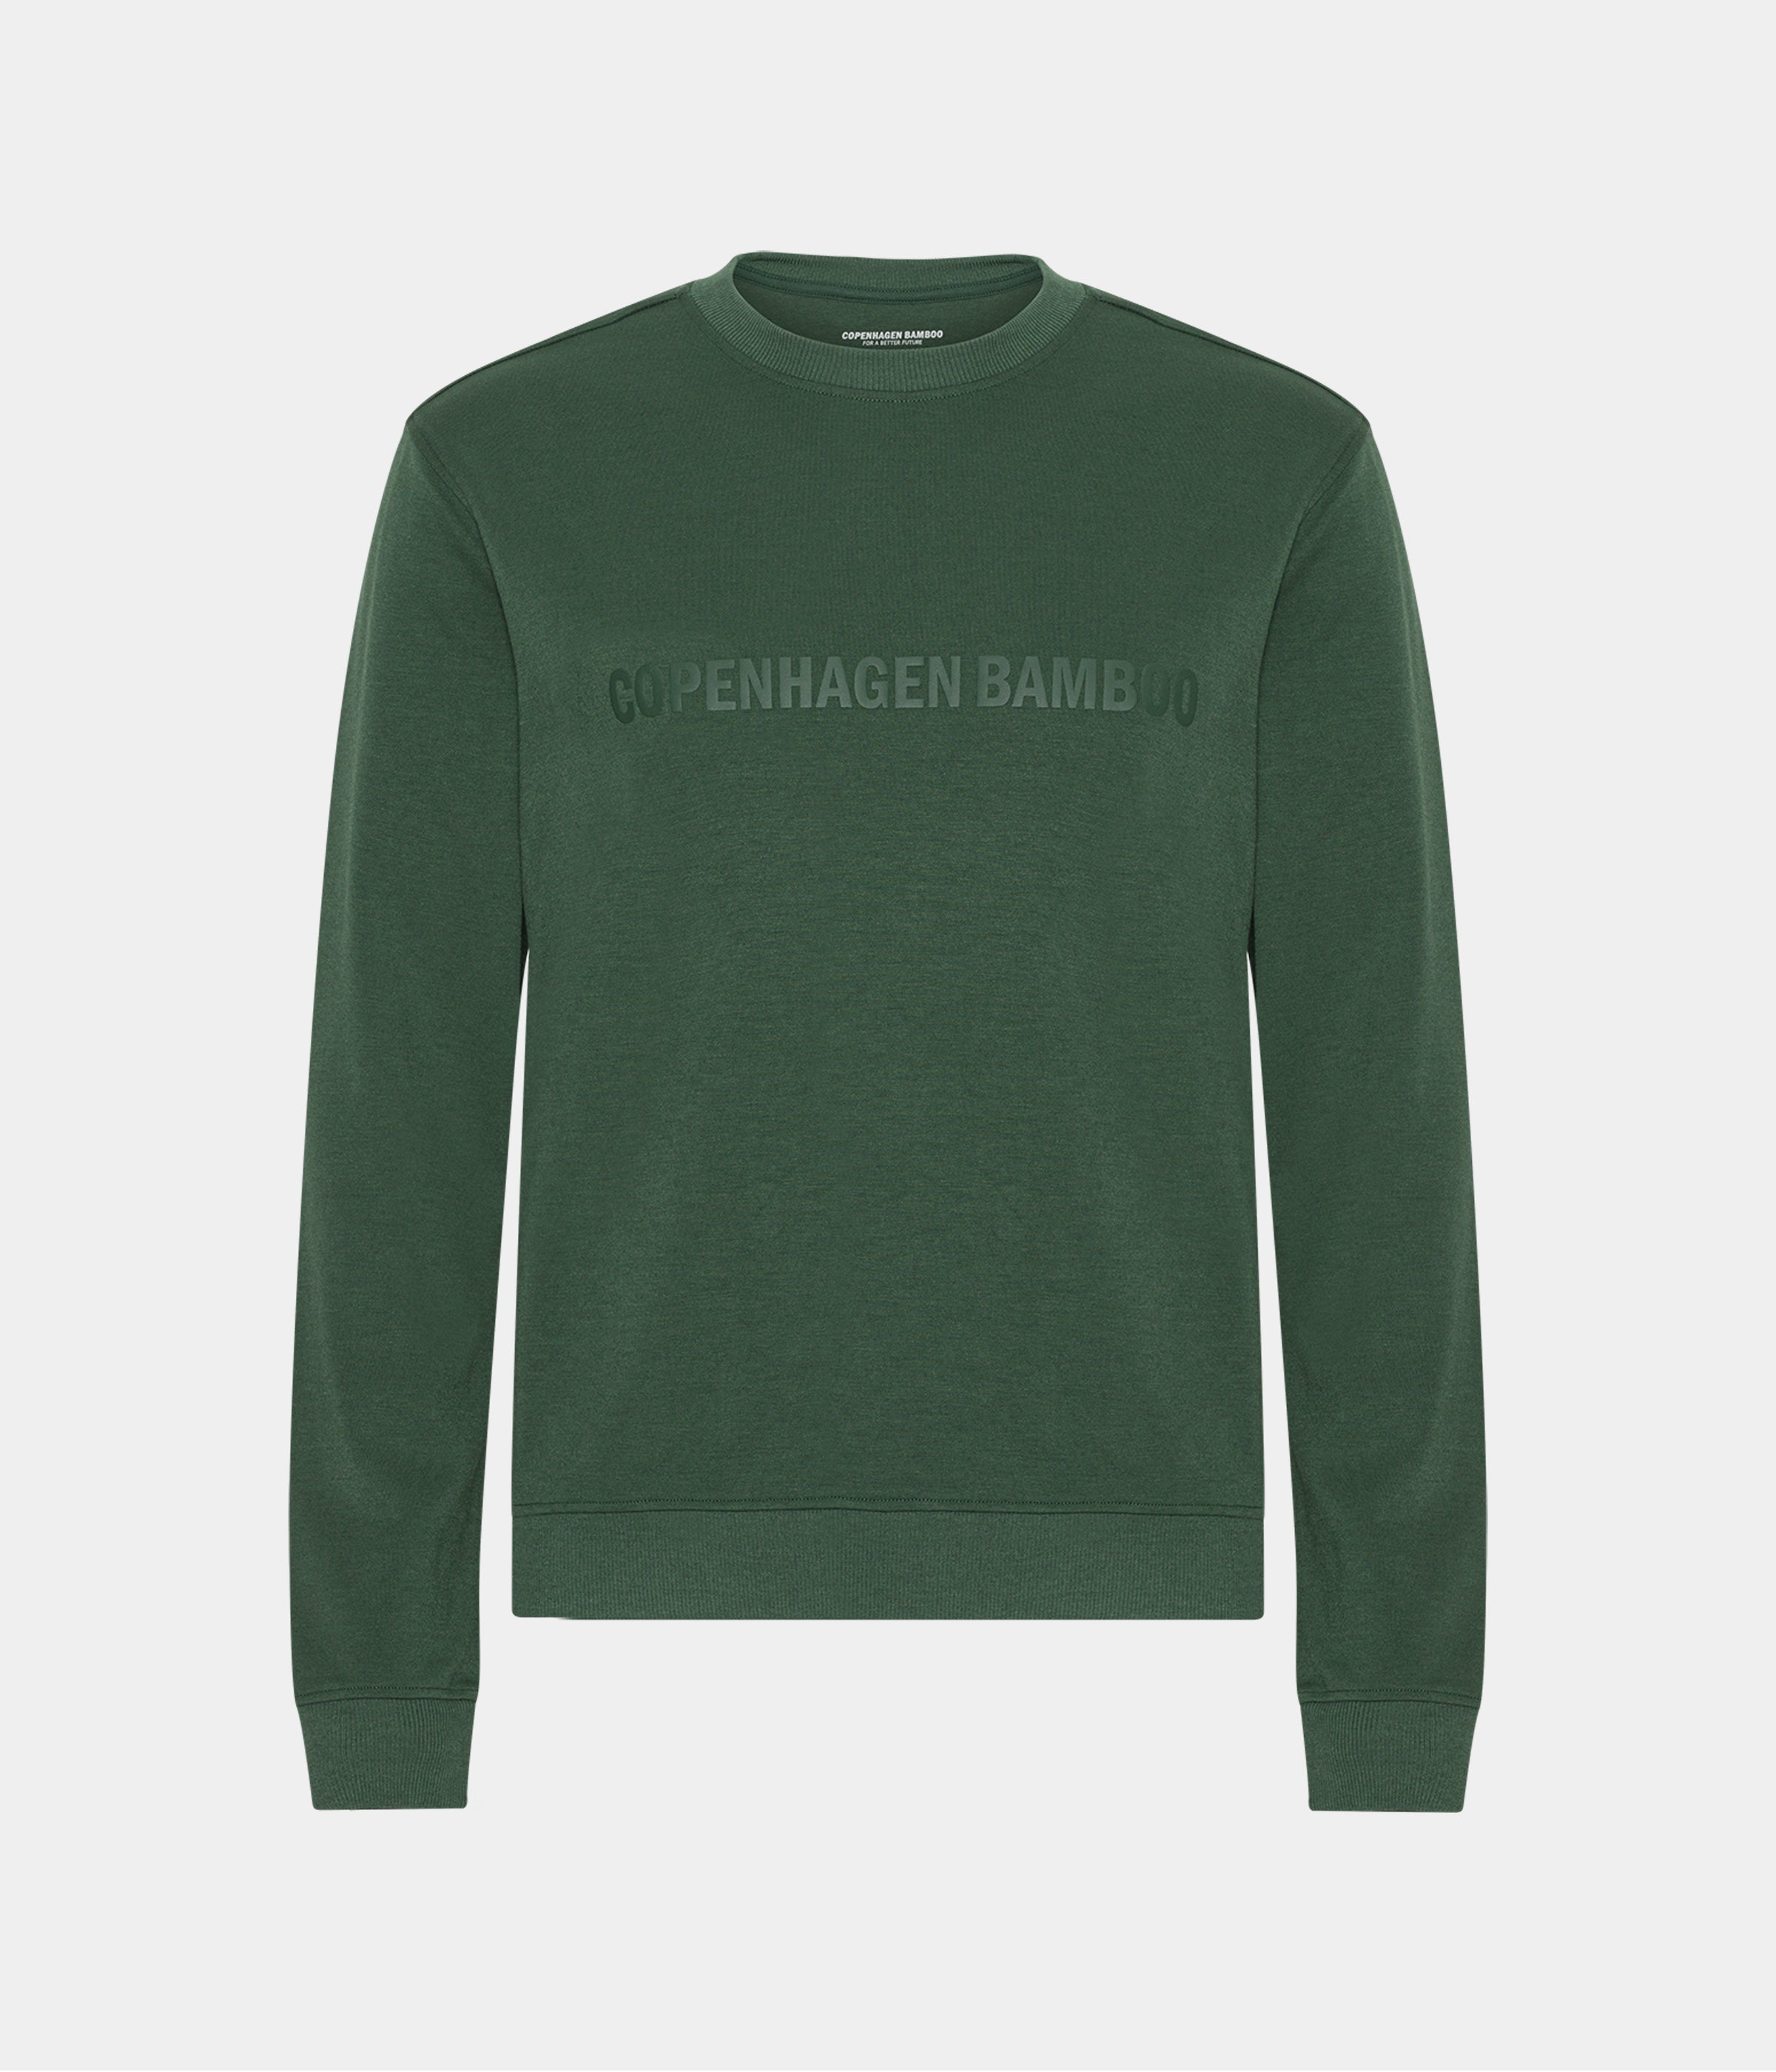 Billede af Grøn bambus sweatshirt til mænd med logo fra Copenhagen Bamboo, XS